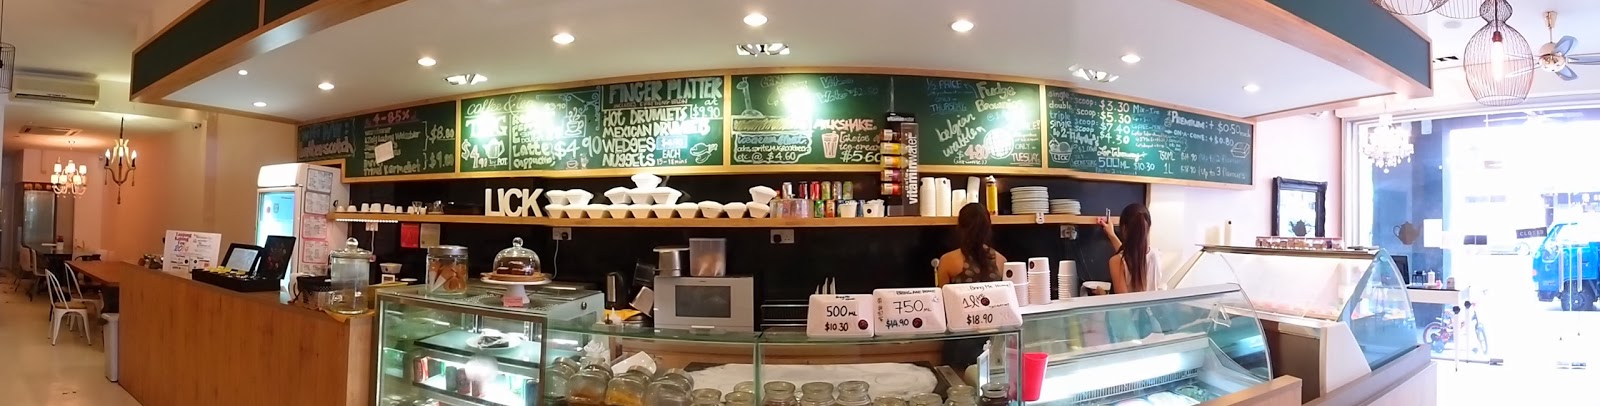 Tanjong Katong Singapore Cafe